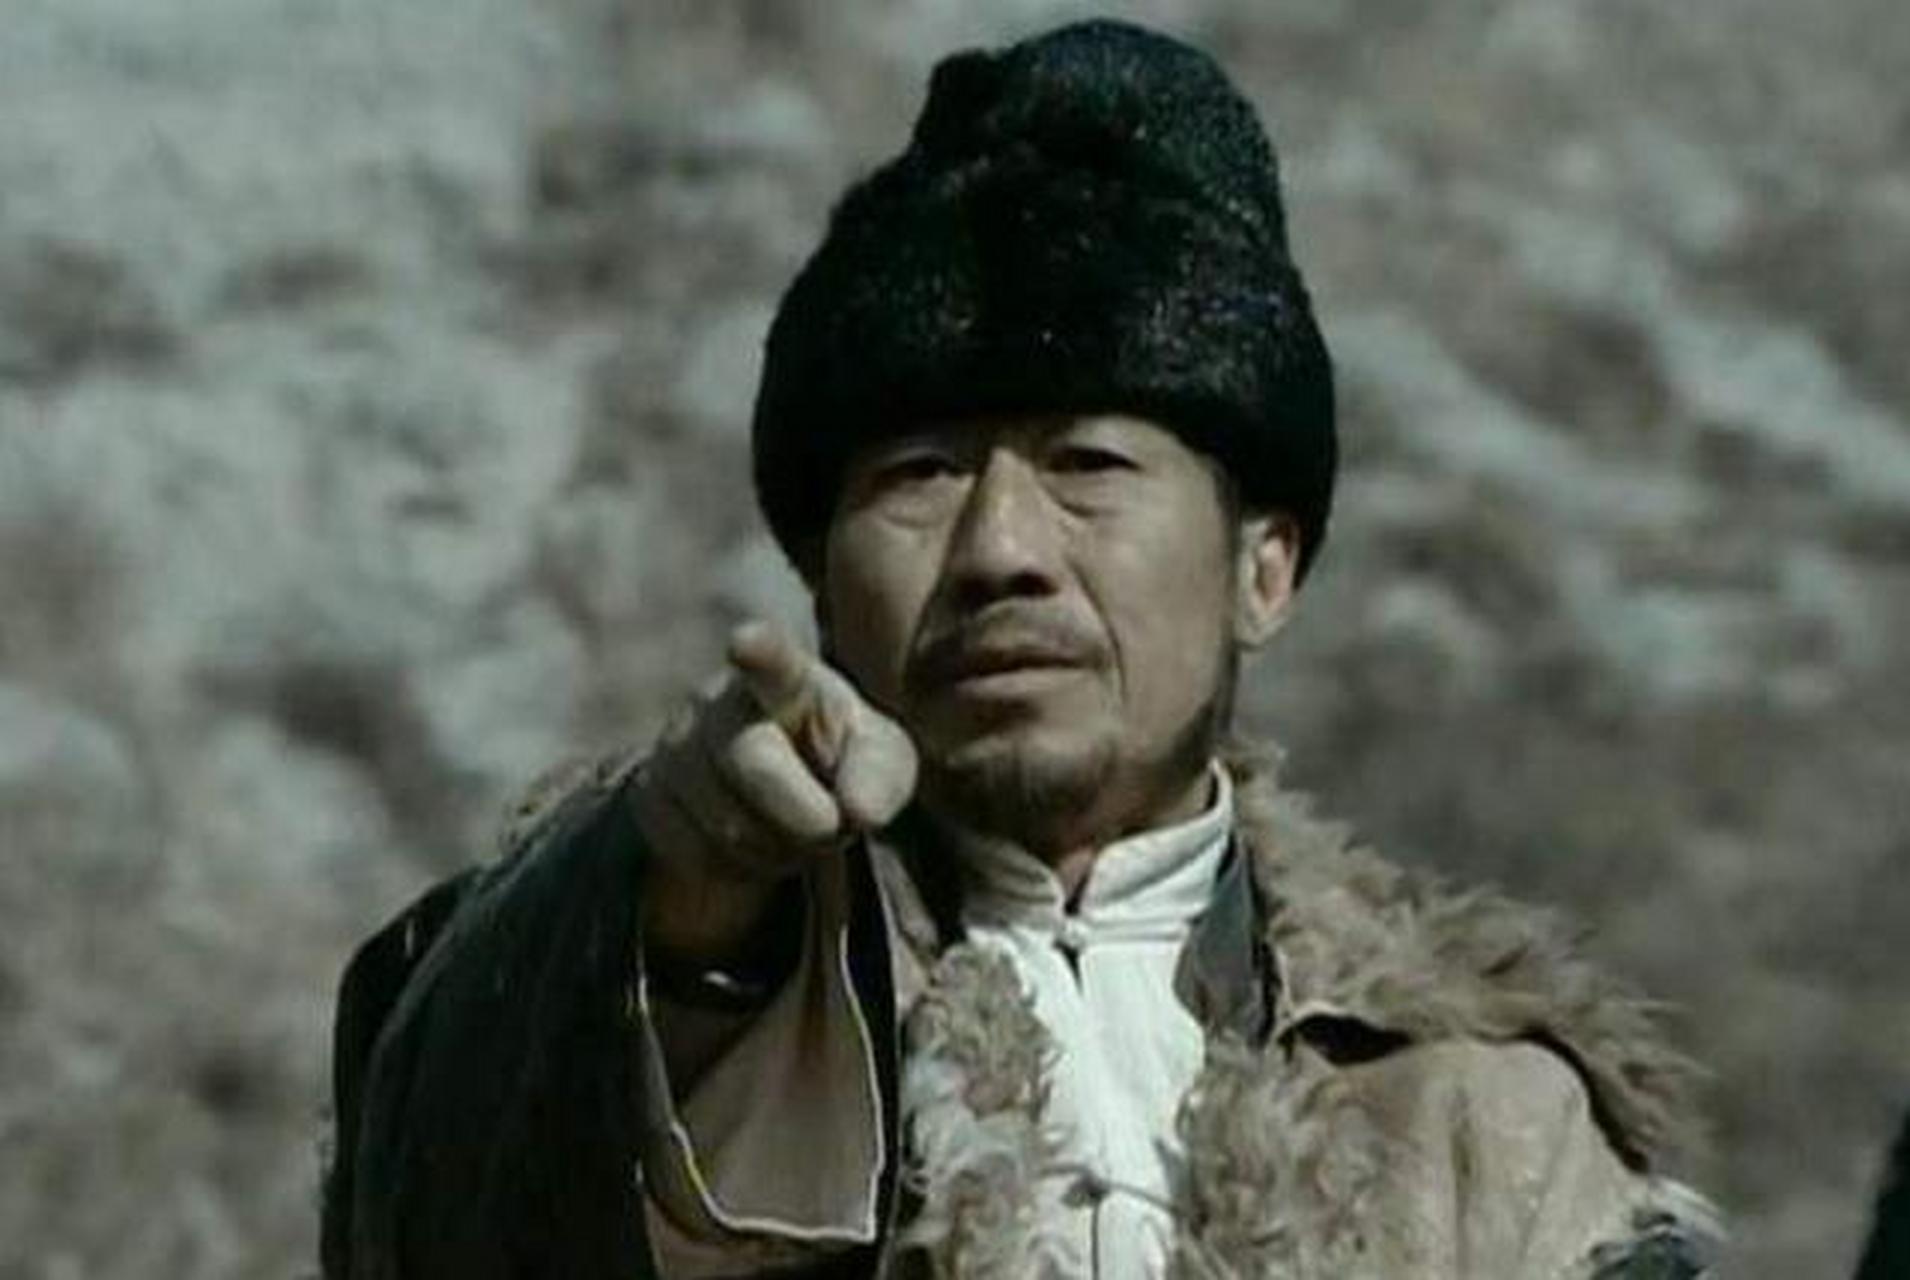 在《亮剑》中的土匪头子谢宝庆非常有戏,饰演他的演员名字叫张国荣,这